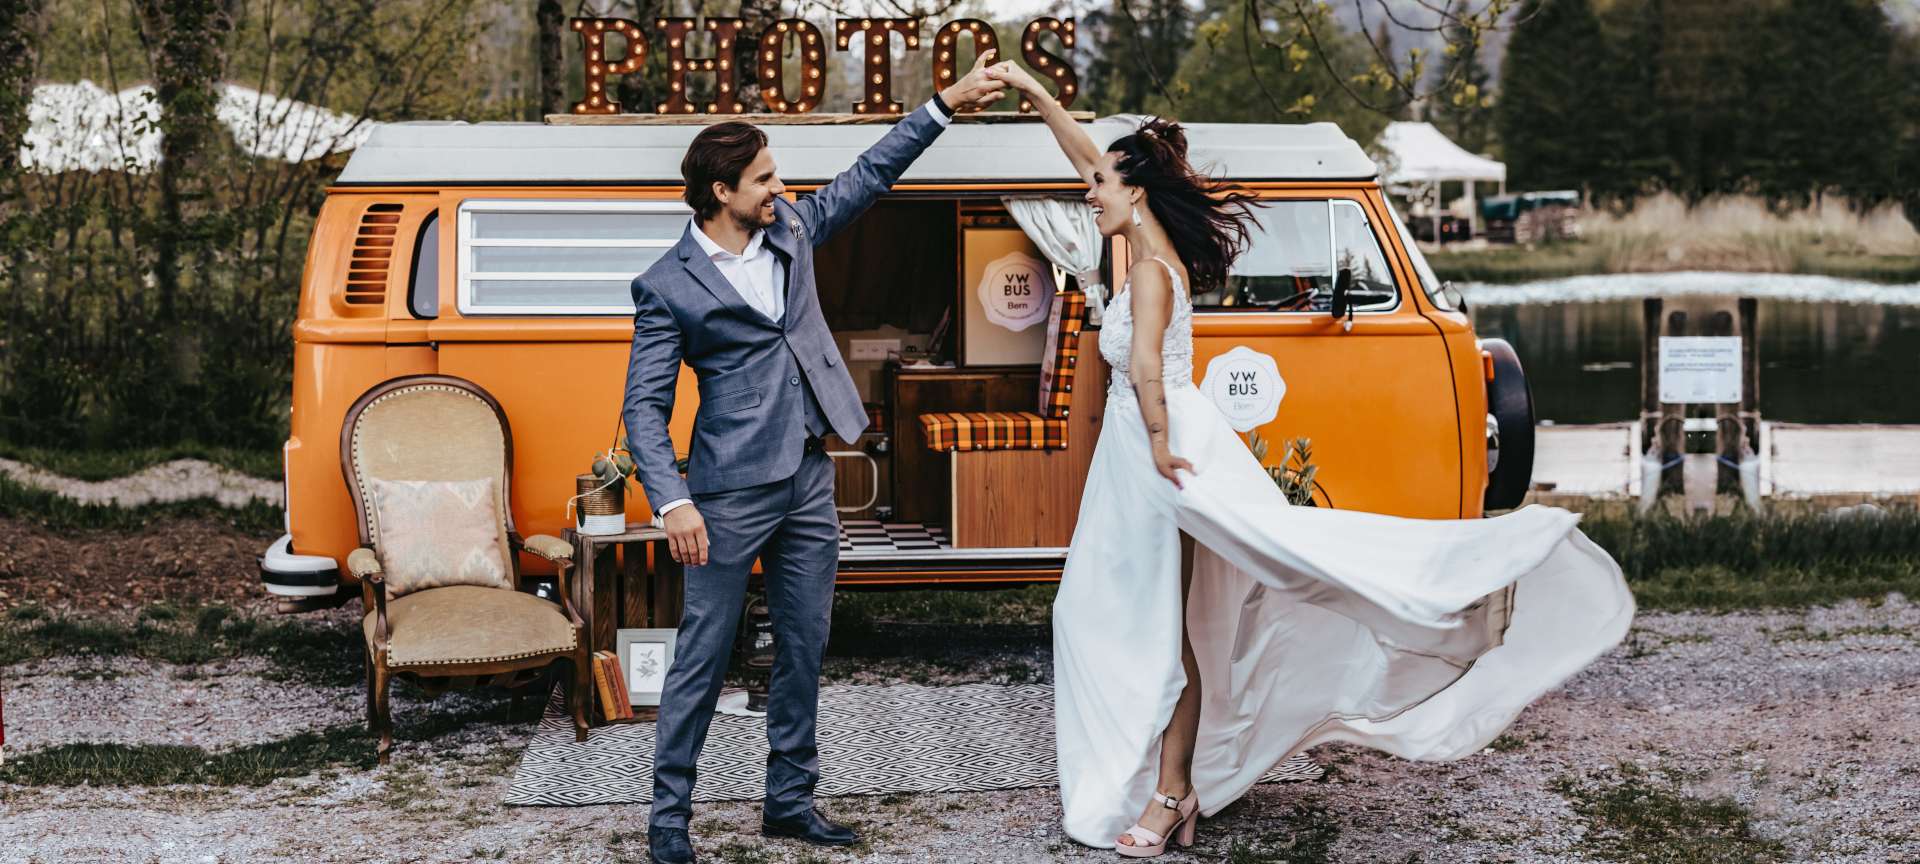 Un couple beau danse devant photobus VW voiture de collection